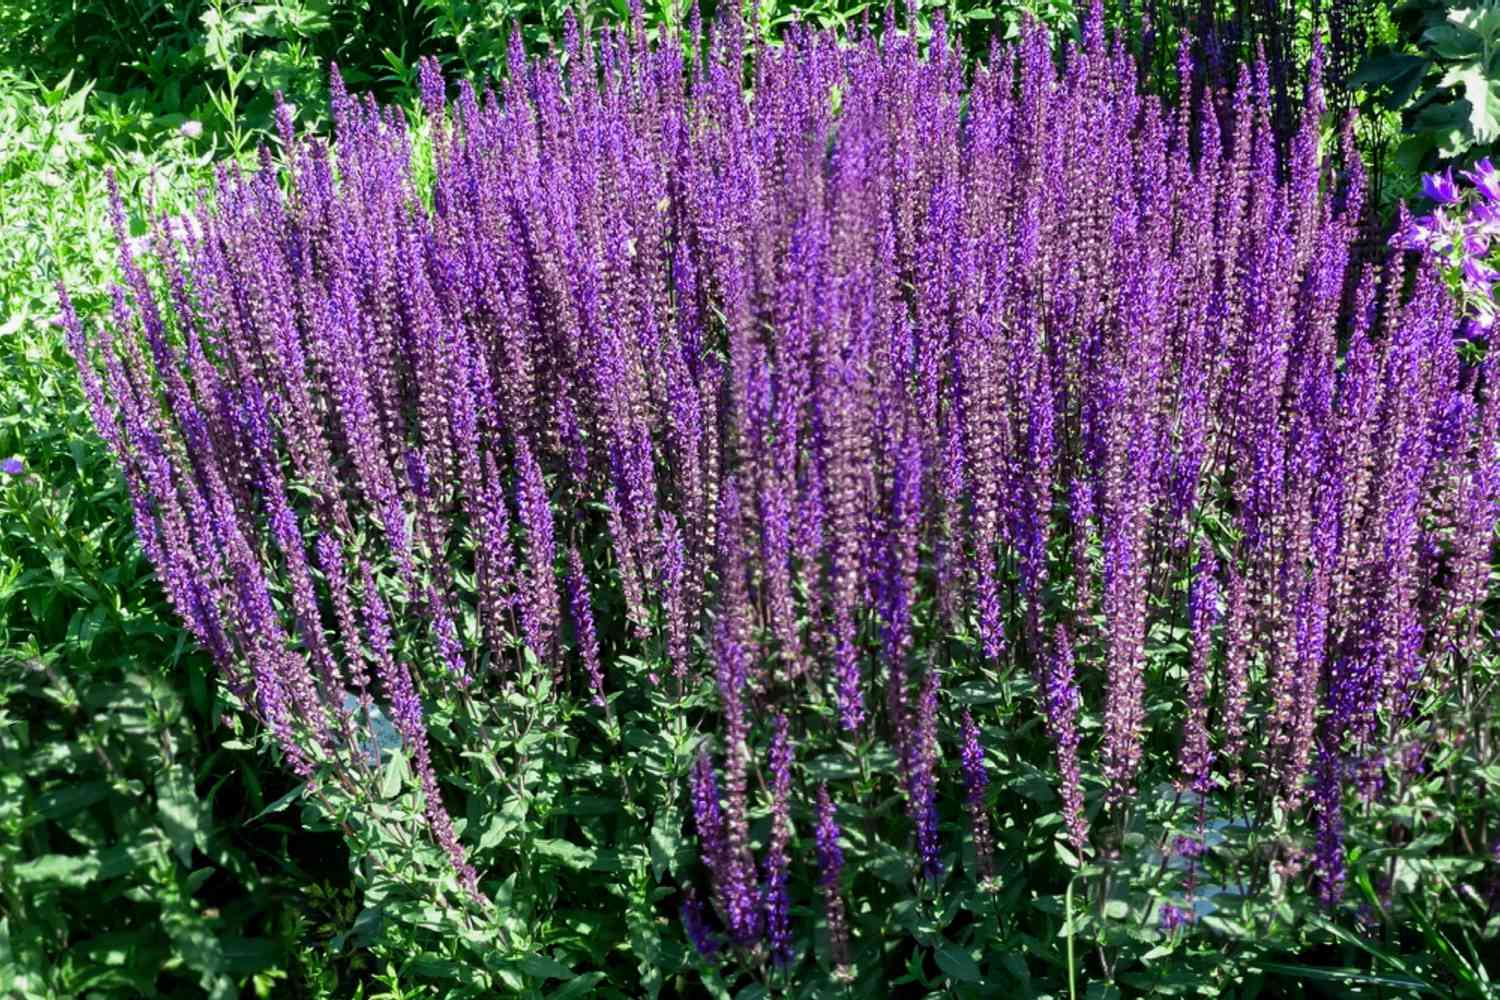 Caradonna-Salvia-Pflanzen mit hohen violetten Blütenähren